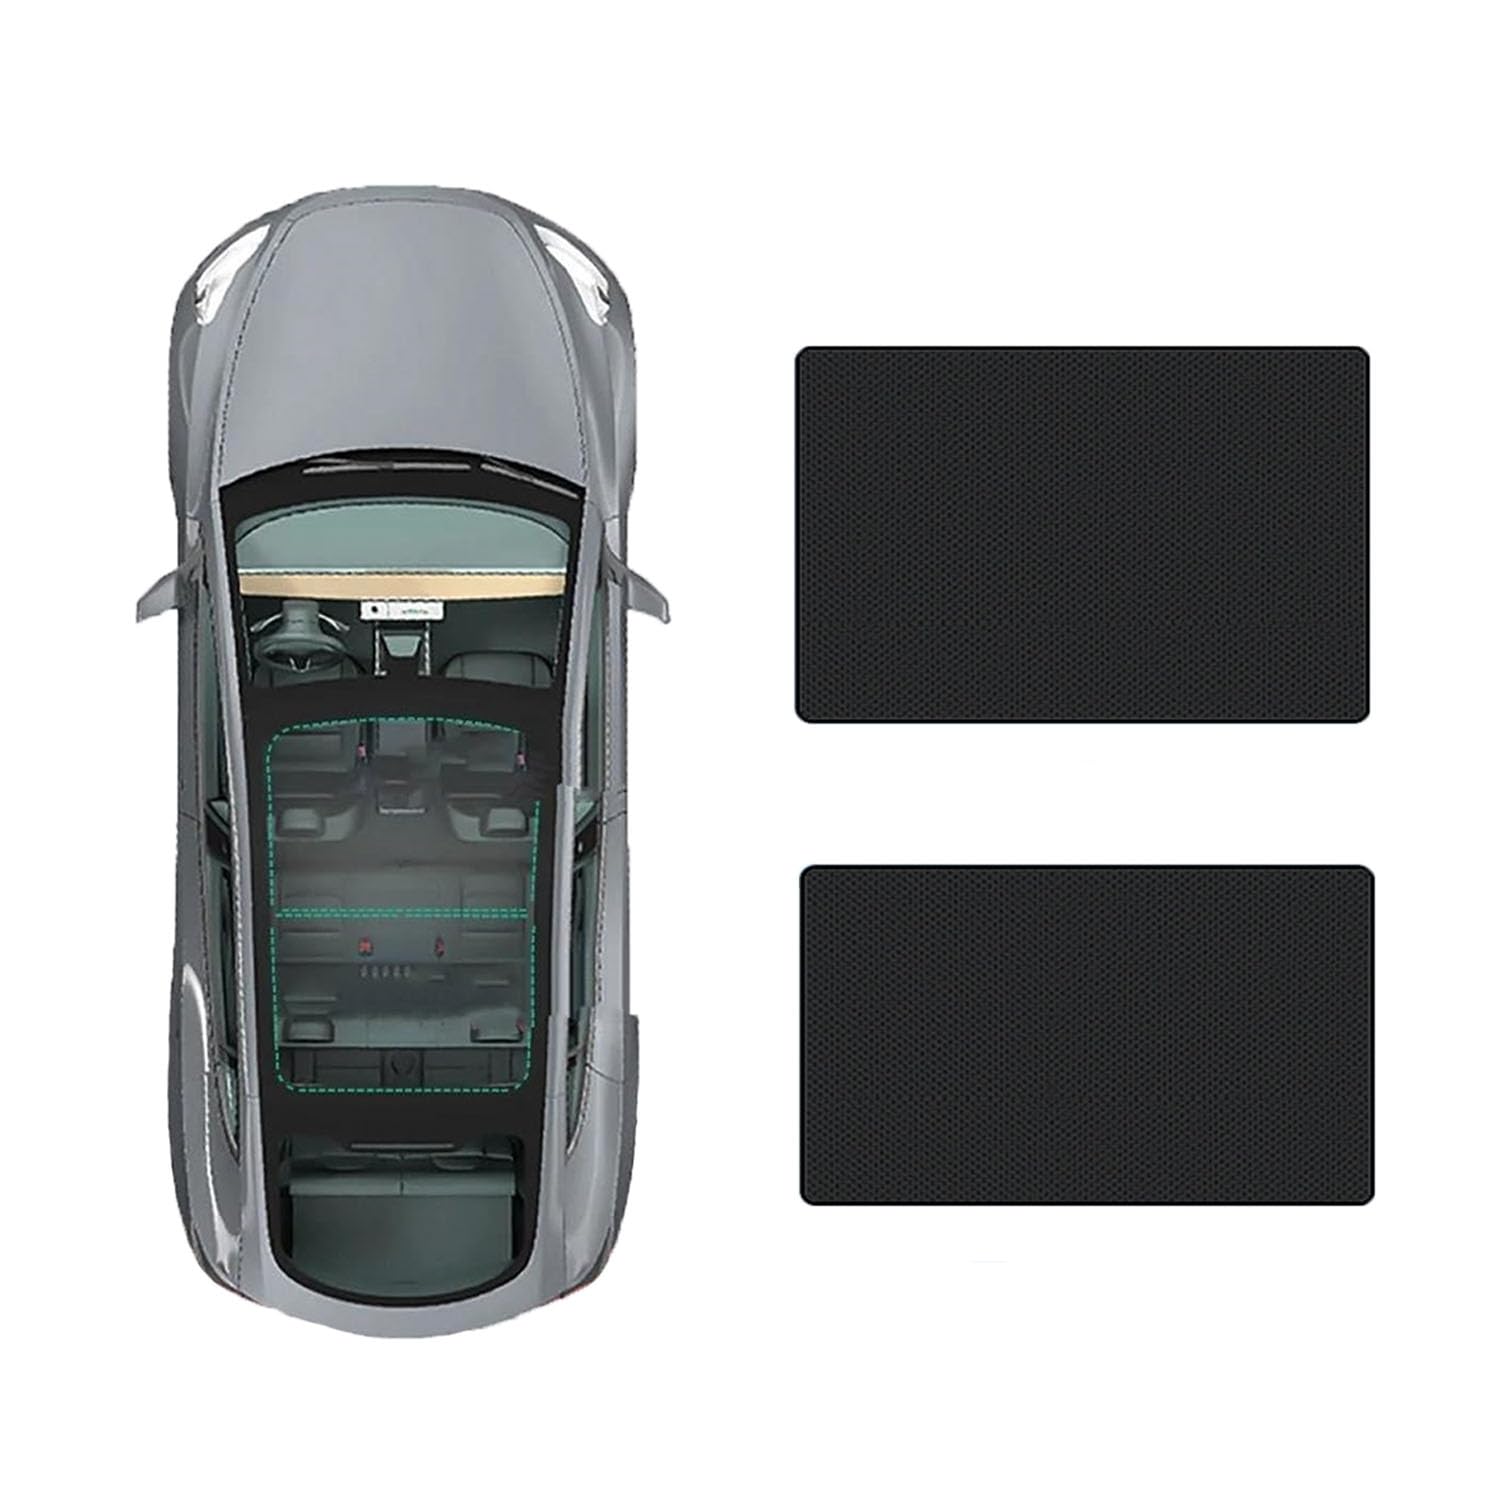 Auto-Schiebedach-Beschattung Für Mazda Hybrid 2023-,Auto Schiebedach Sonnenschutz Dachfenster Dach Wärme Isolierung Beschattung Innen,C-Black Regular Style von LiuROSE